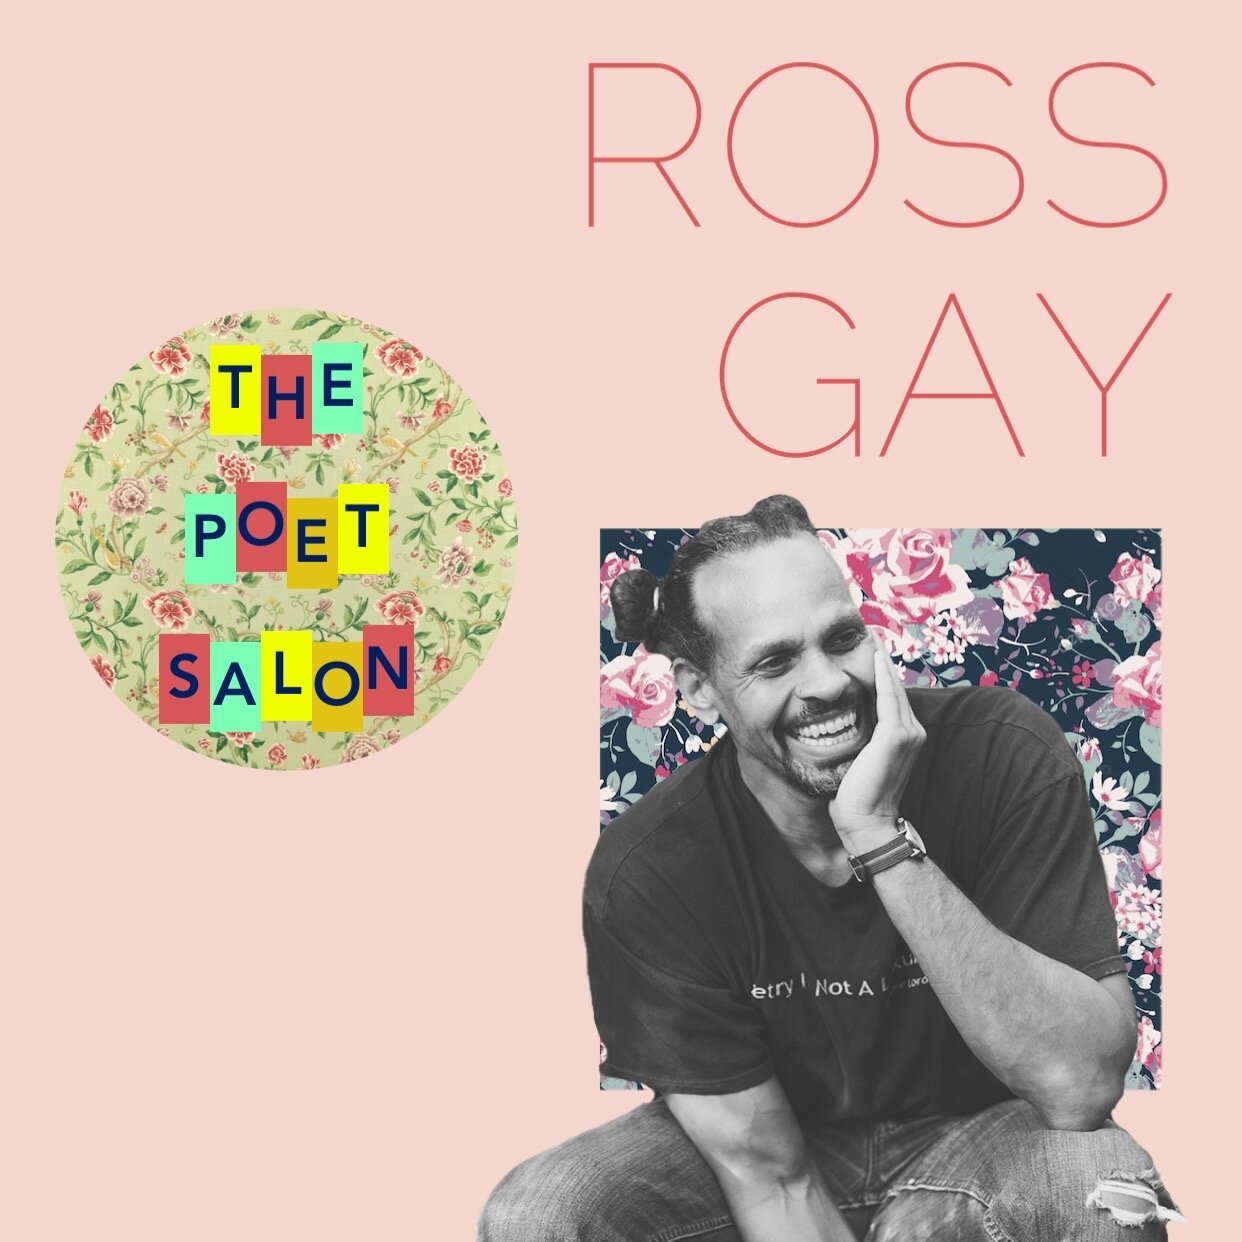 Ross Gay